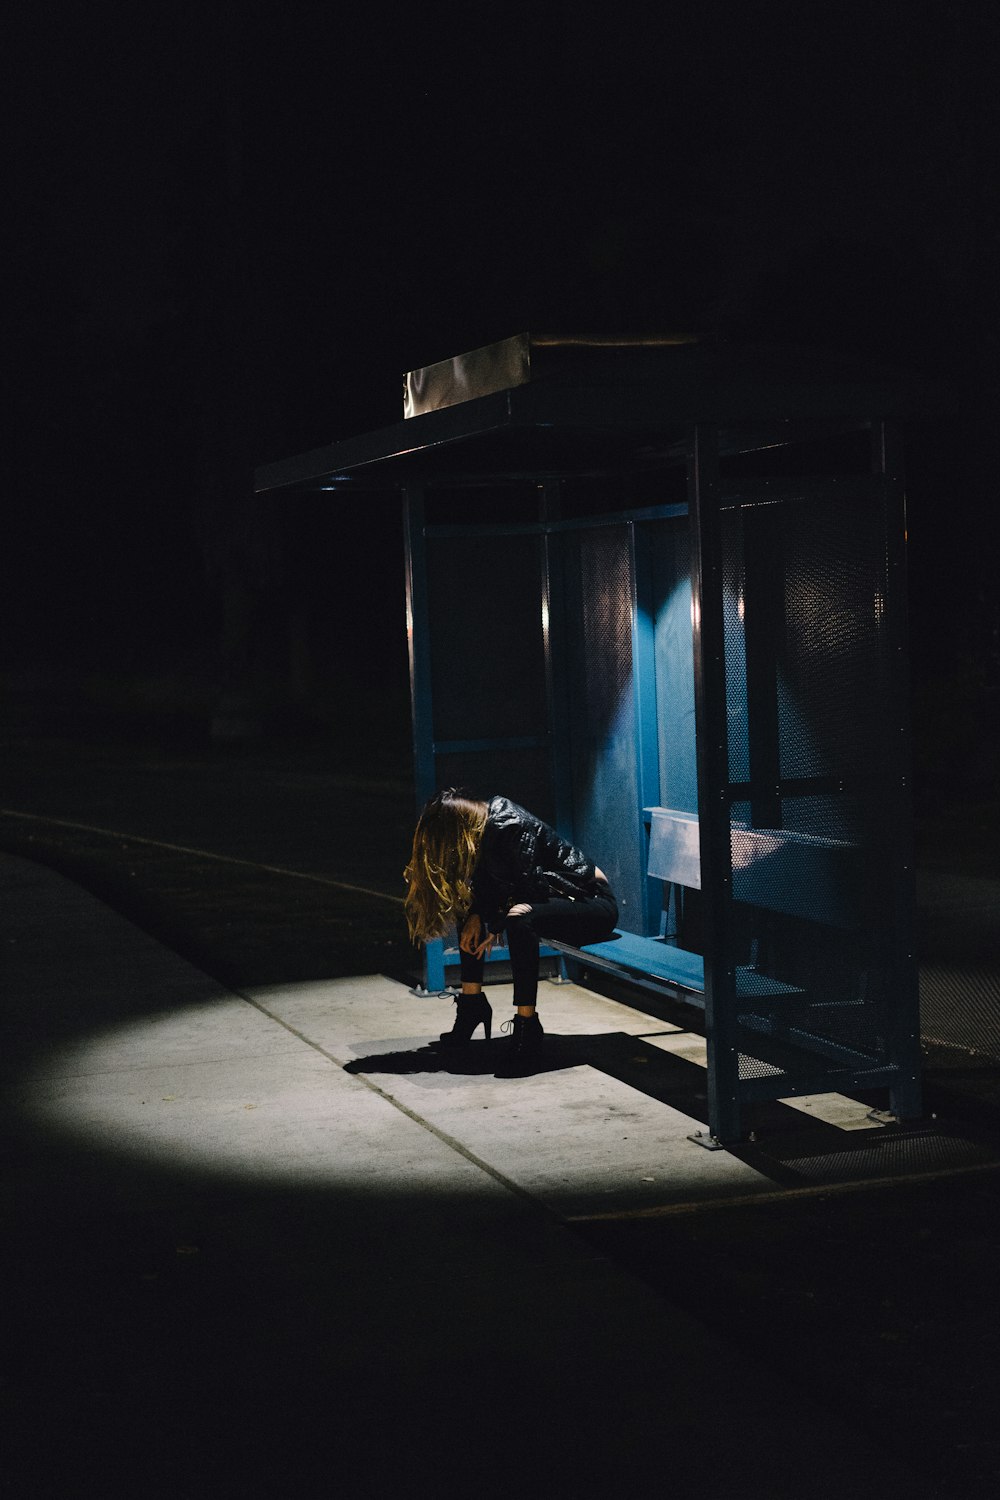 Mujer sentada en un banco de pesas negro durante la noche